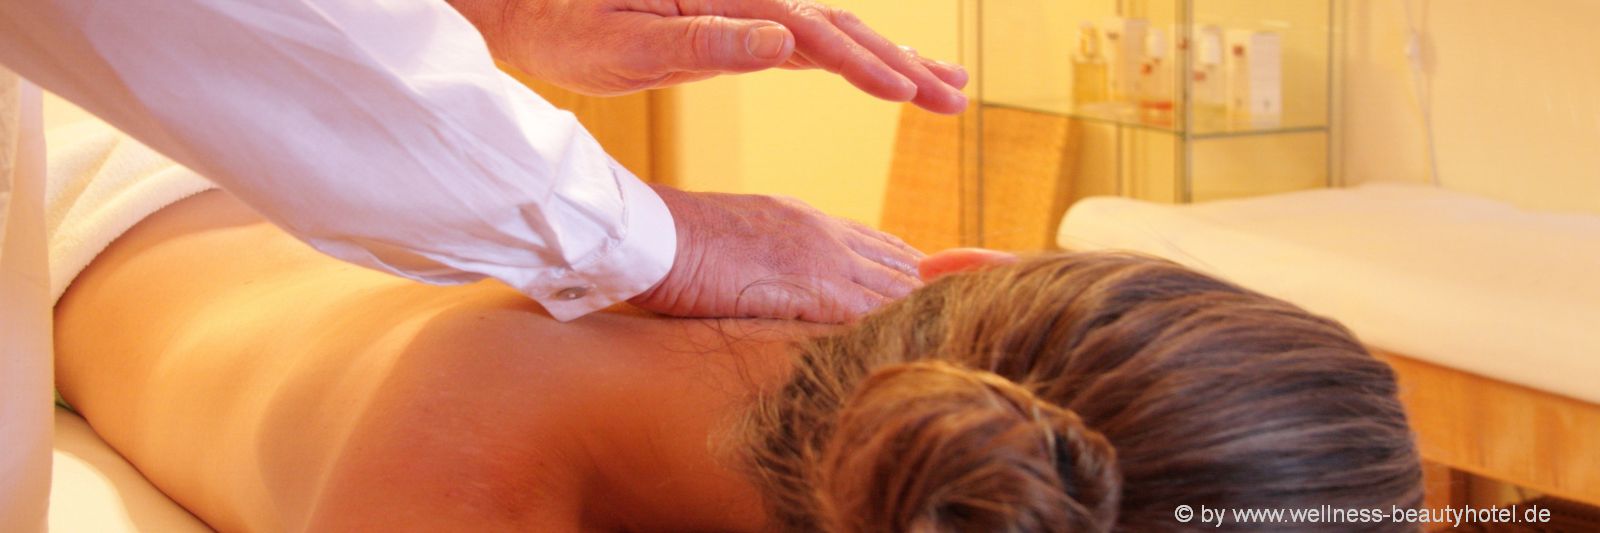 wellnessurlaub-deutschland-wellnesshotels-massagen-day-spa